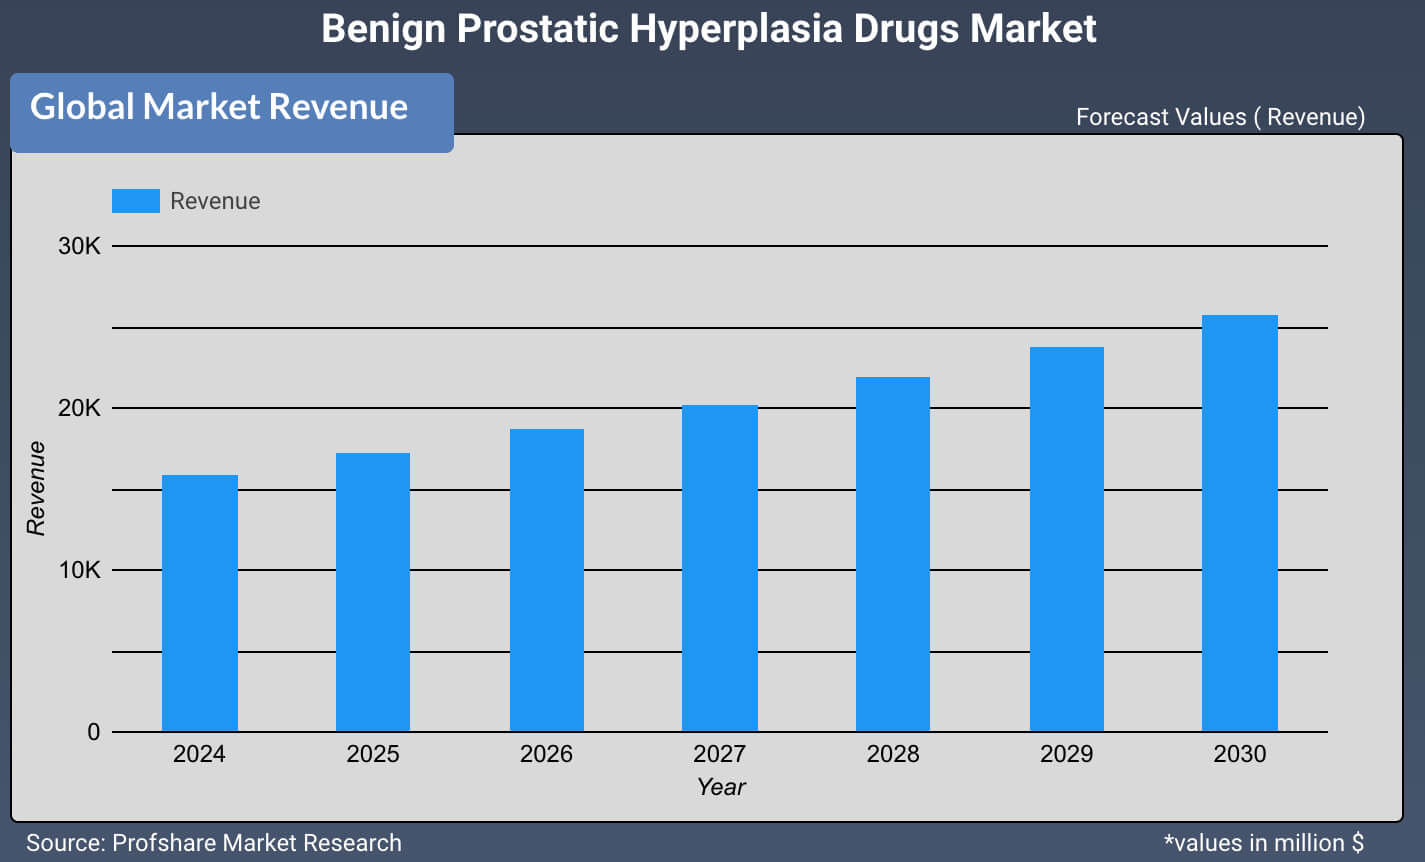 Benign Prostatic Hyperplasia Drugs Market